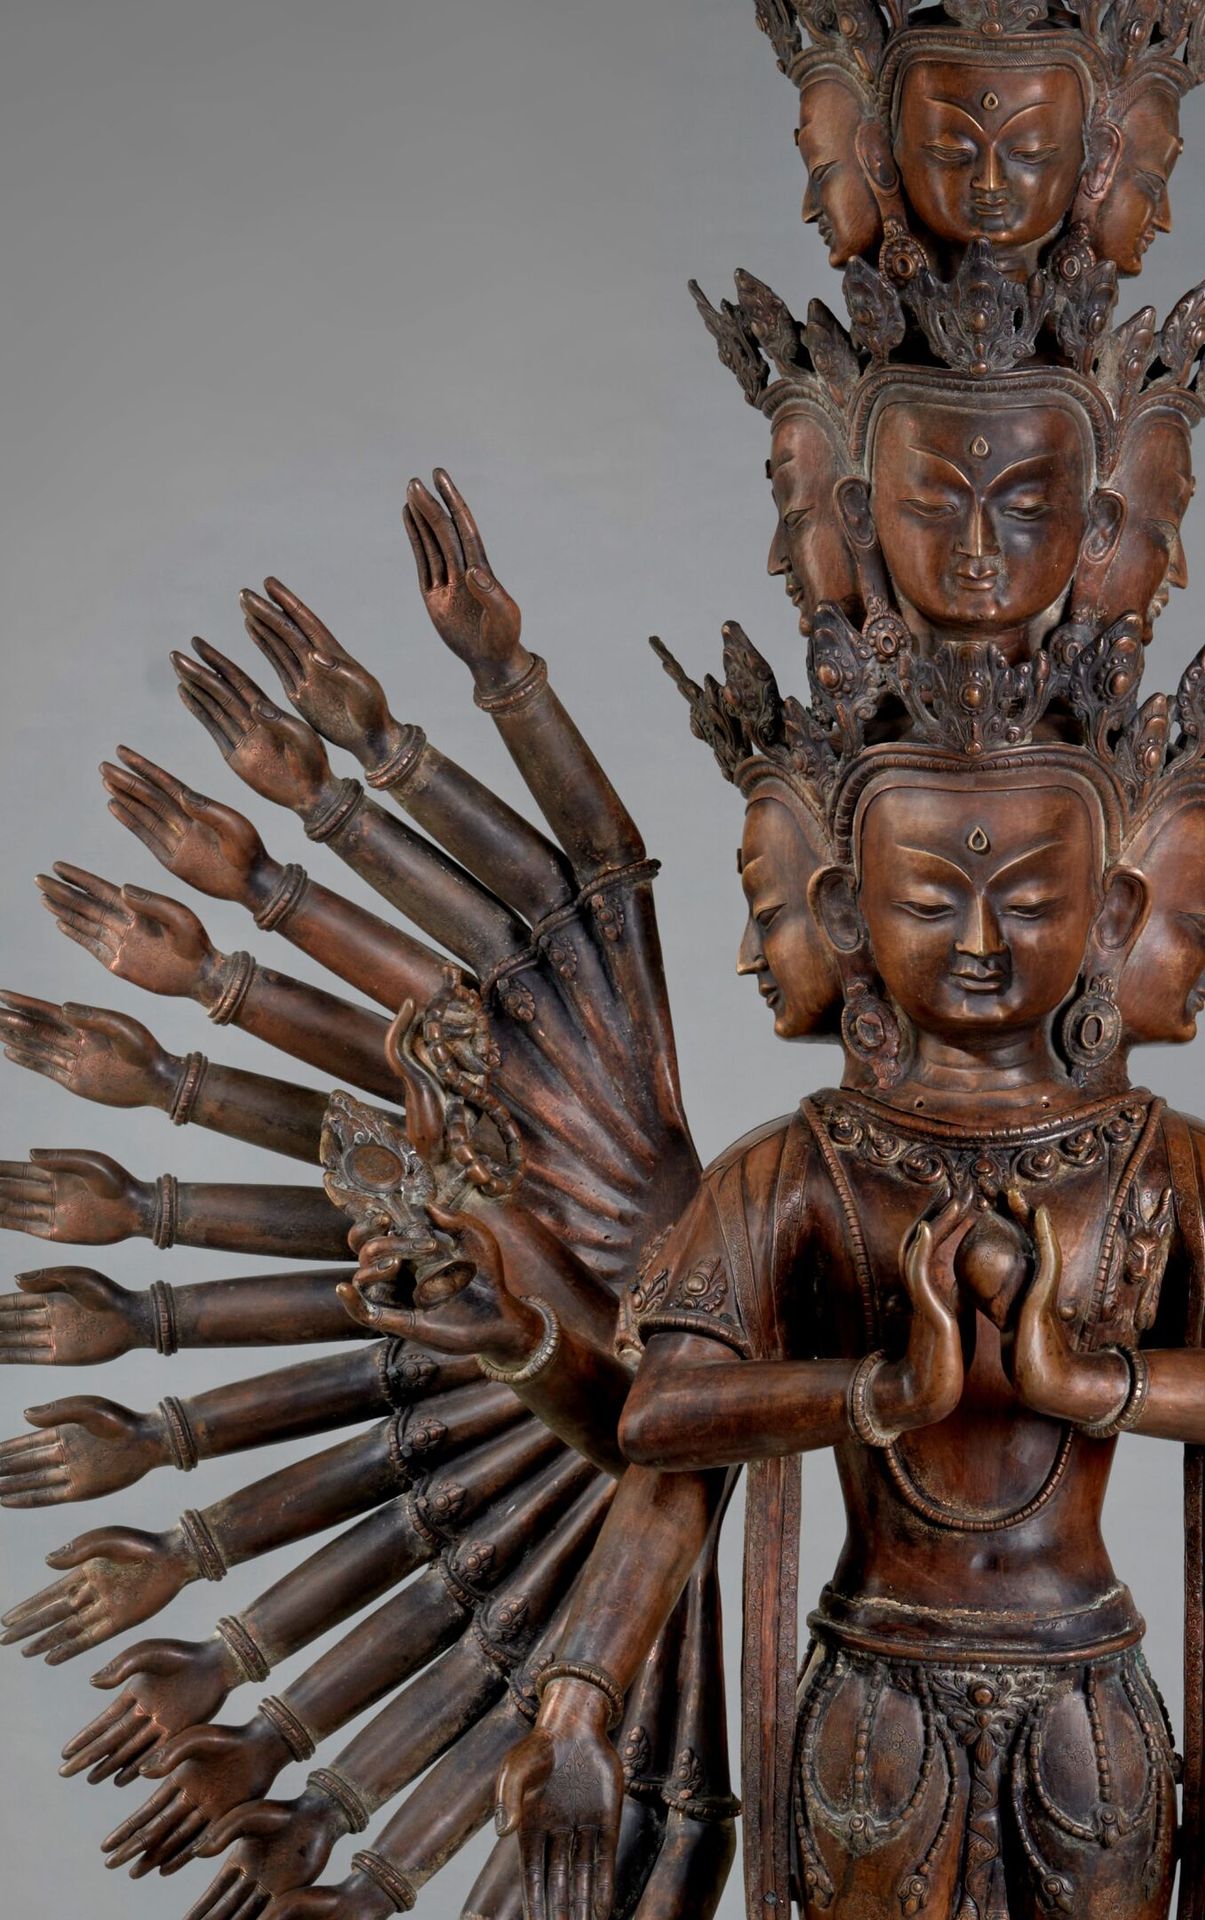 Null 尼泊尔，19世纪末/20世纪初
观世音菩萨的铜像，有11个头和 "一千条手臂"，站在有两排莲花的圆形底座上，身穿道服，佩戴珠宝，围巾飘到脚下的涡流中，&hellip;